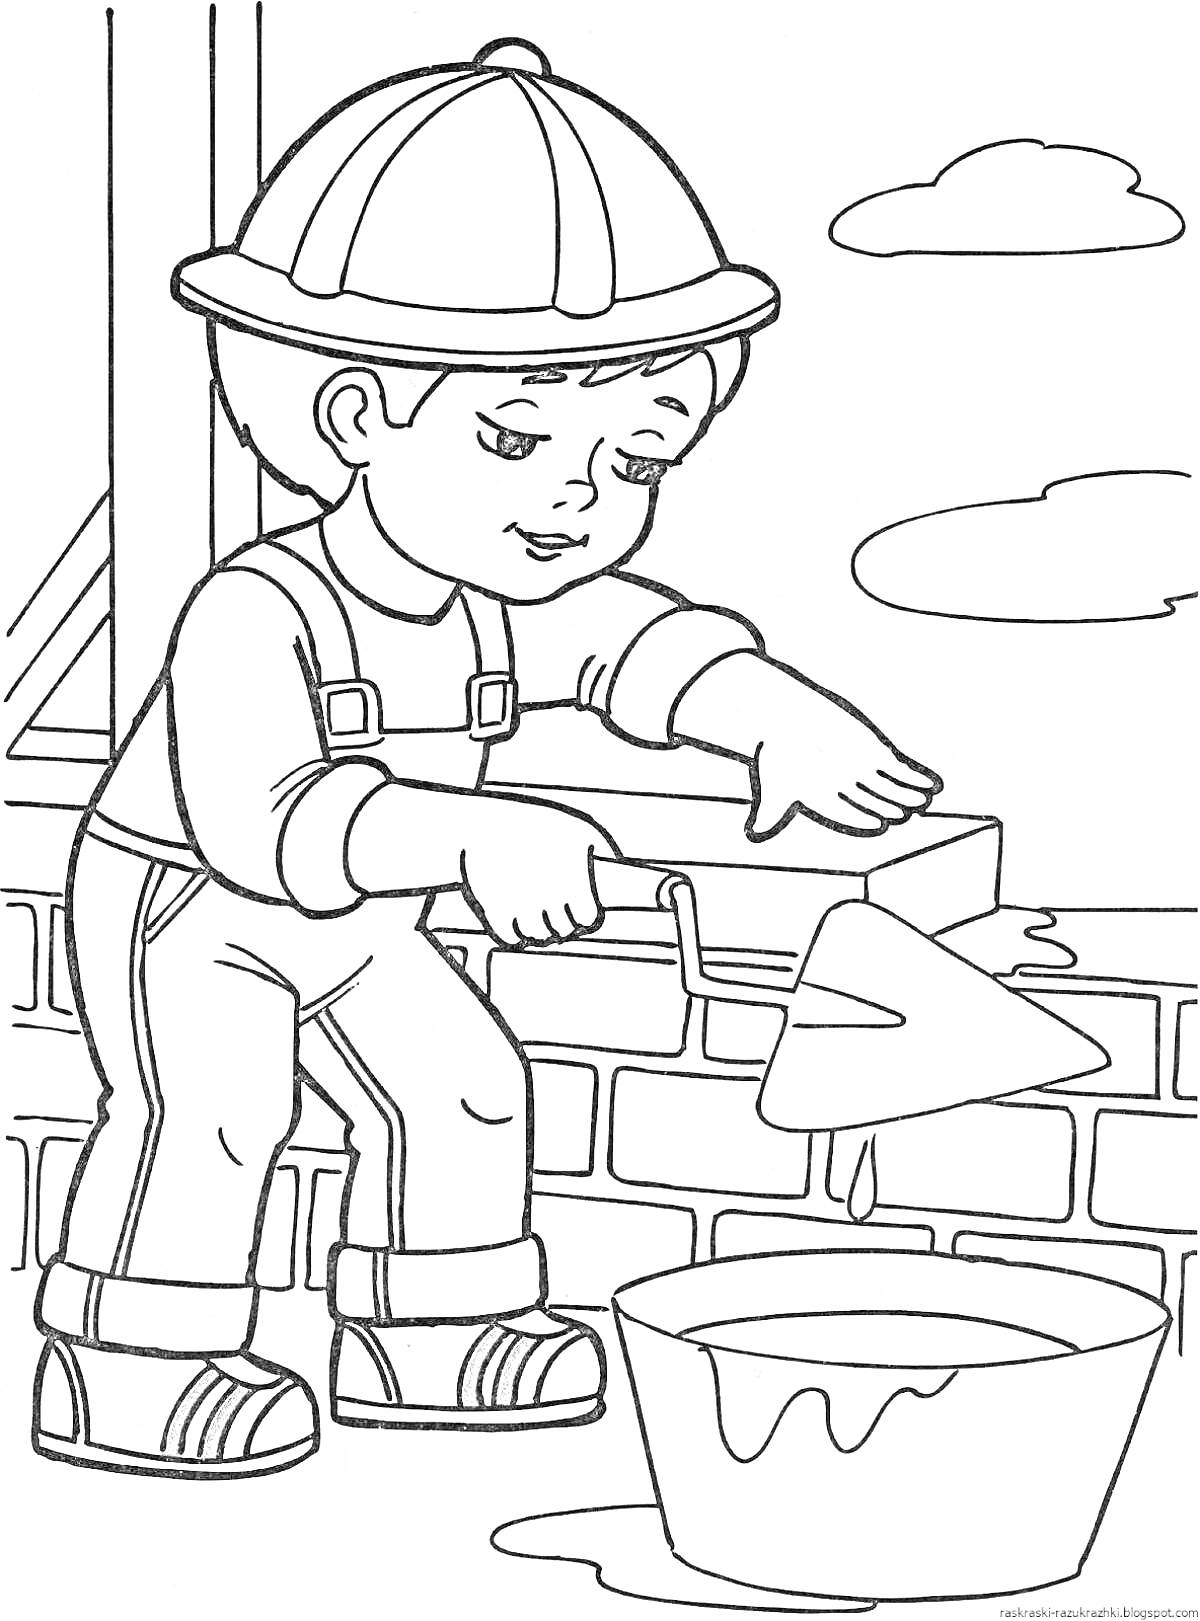 Раскраска Мальчик-строитель укладывает кирпичи, держа шпатель и находясь рядом с ведром